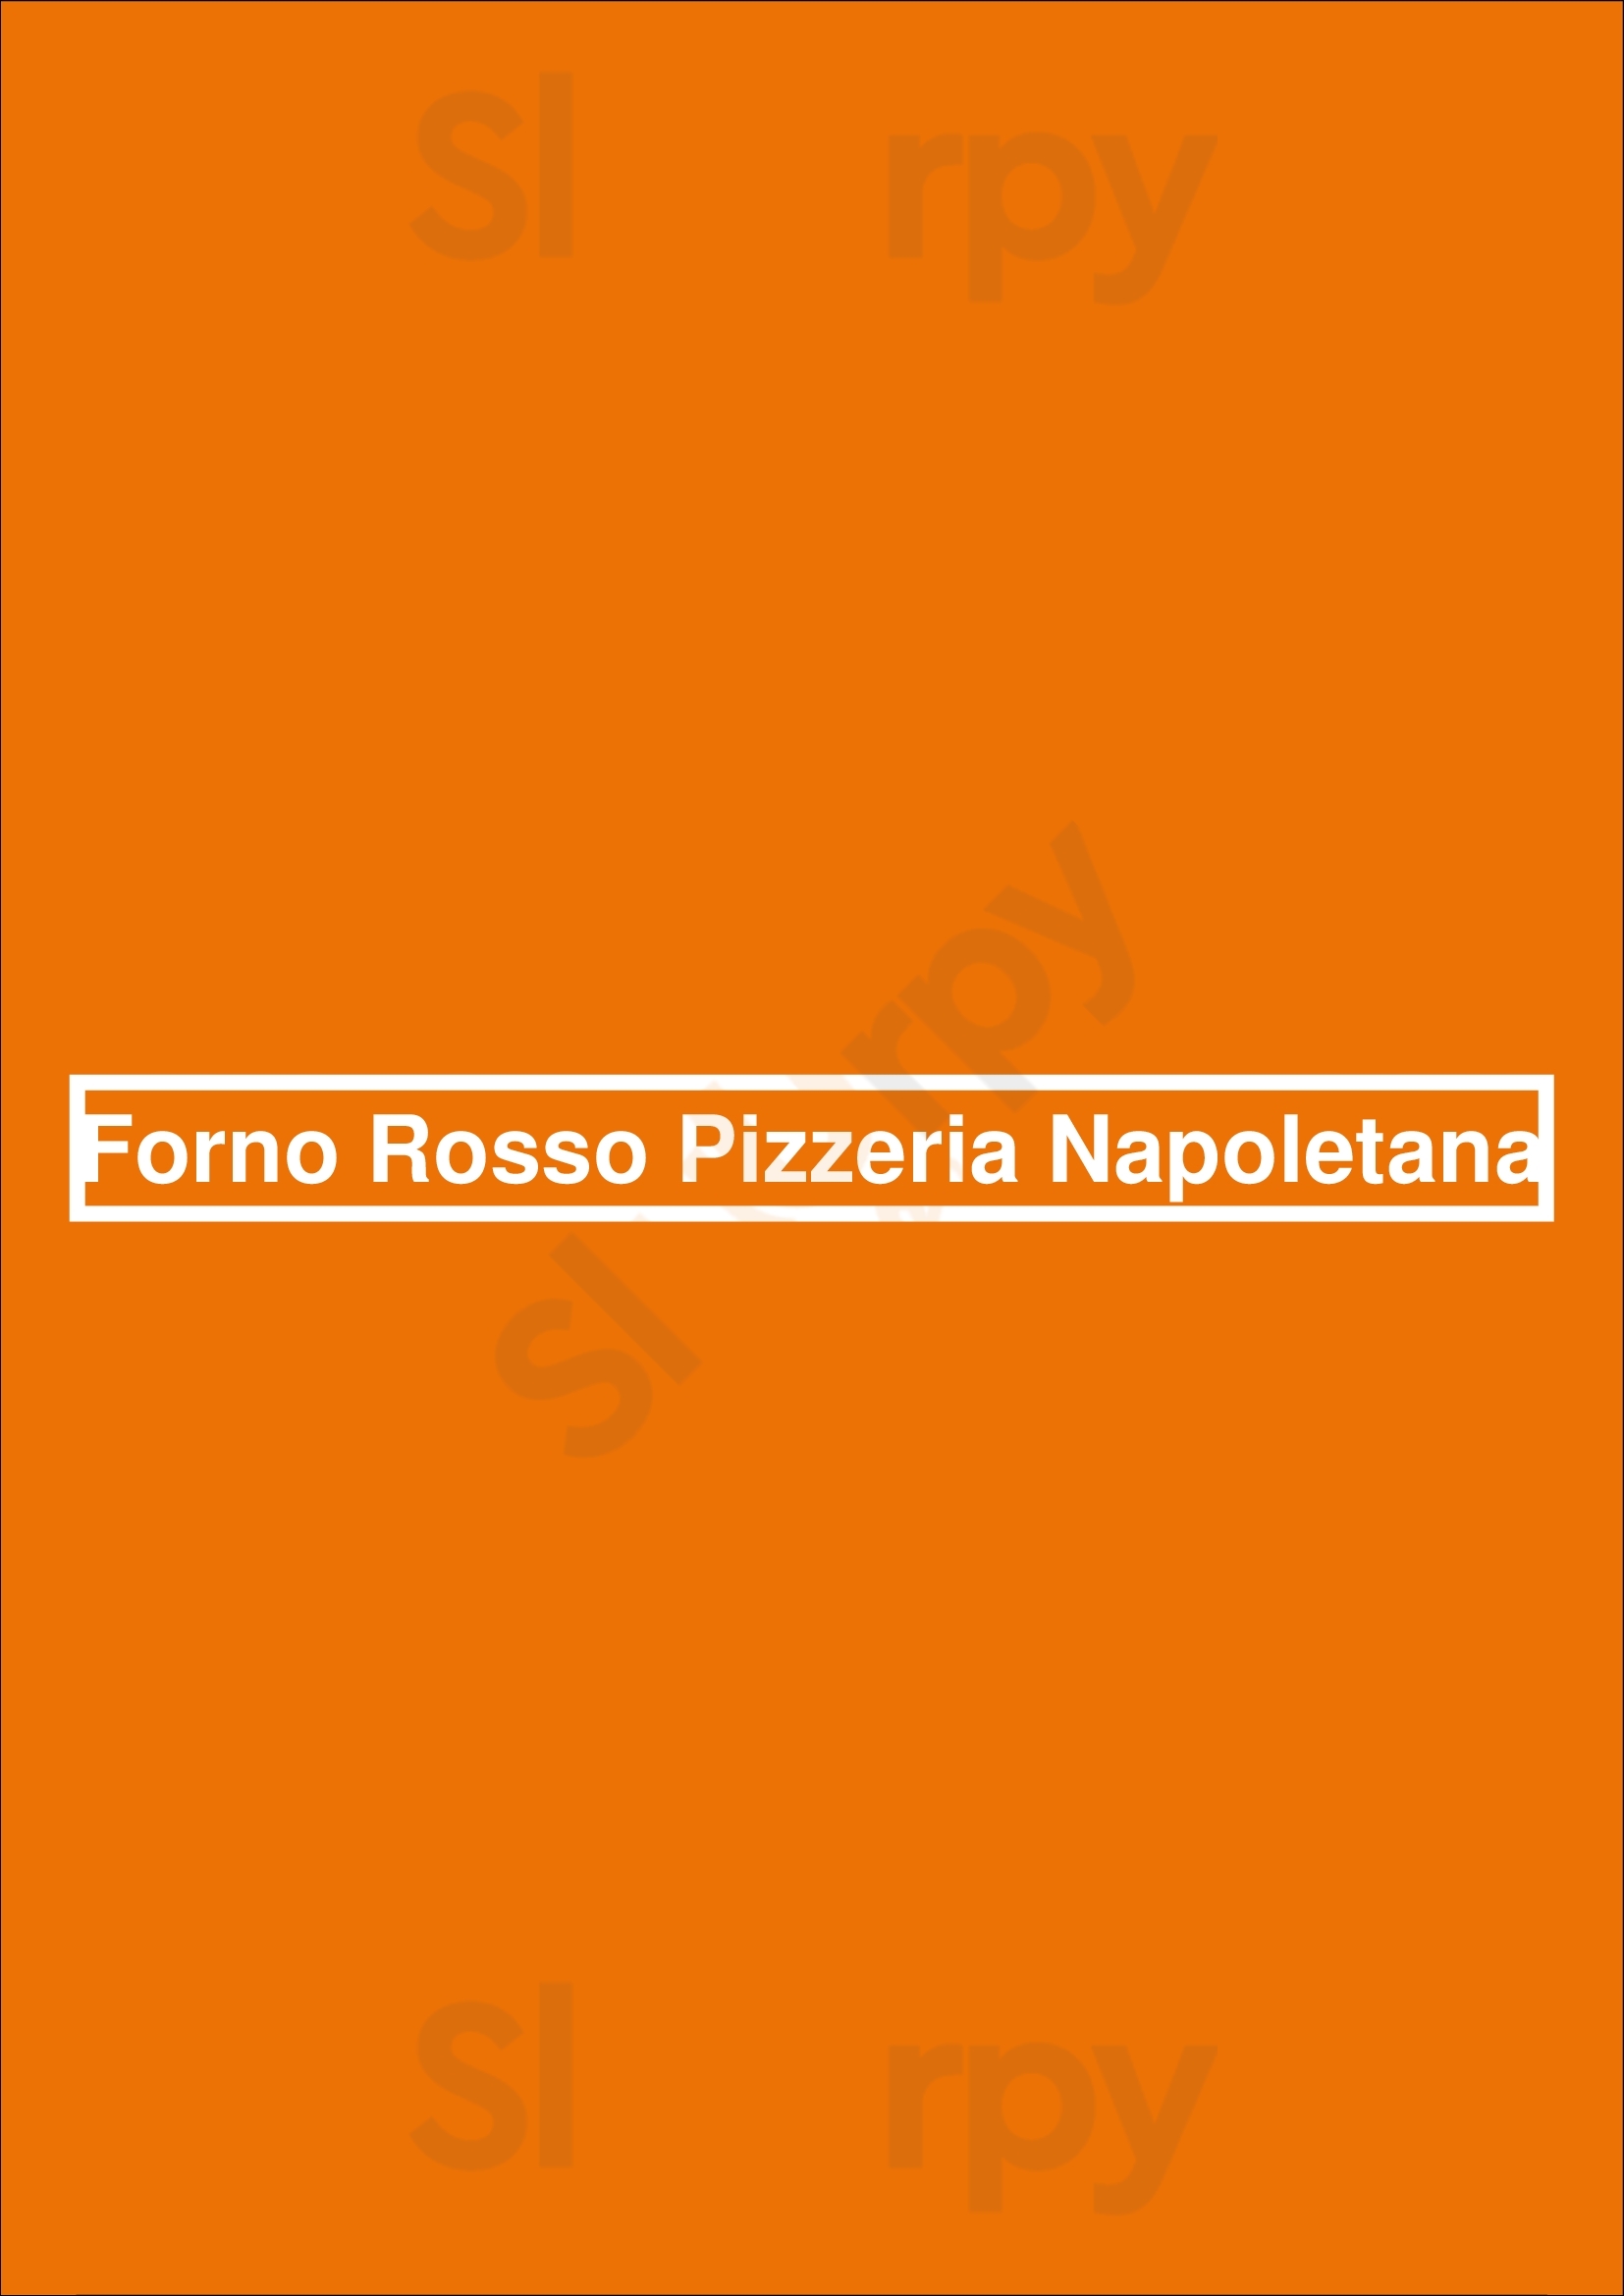 Forno Rosso Pizzeria Napoletana Chicago Menu - 1